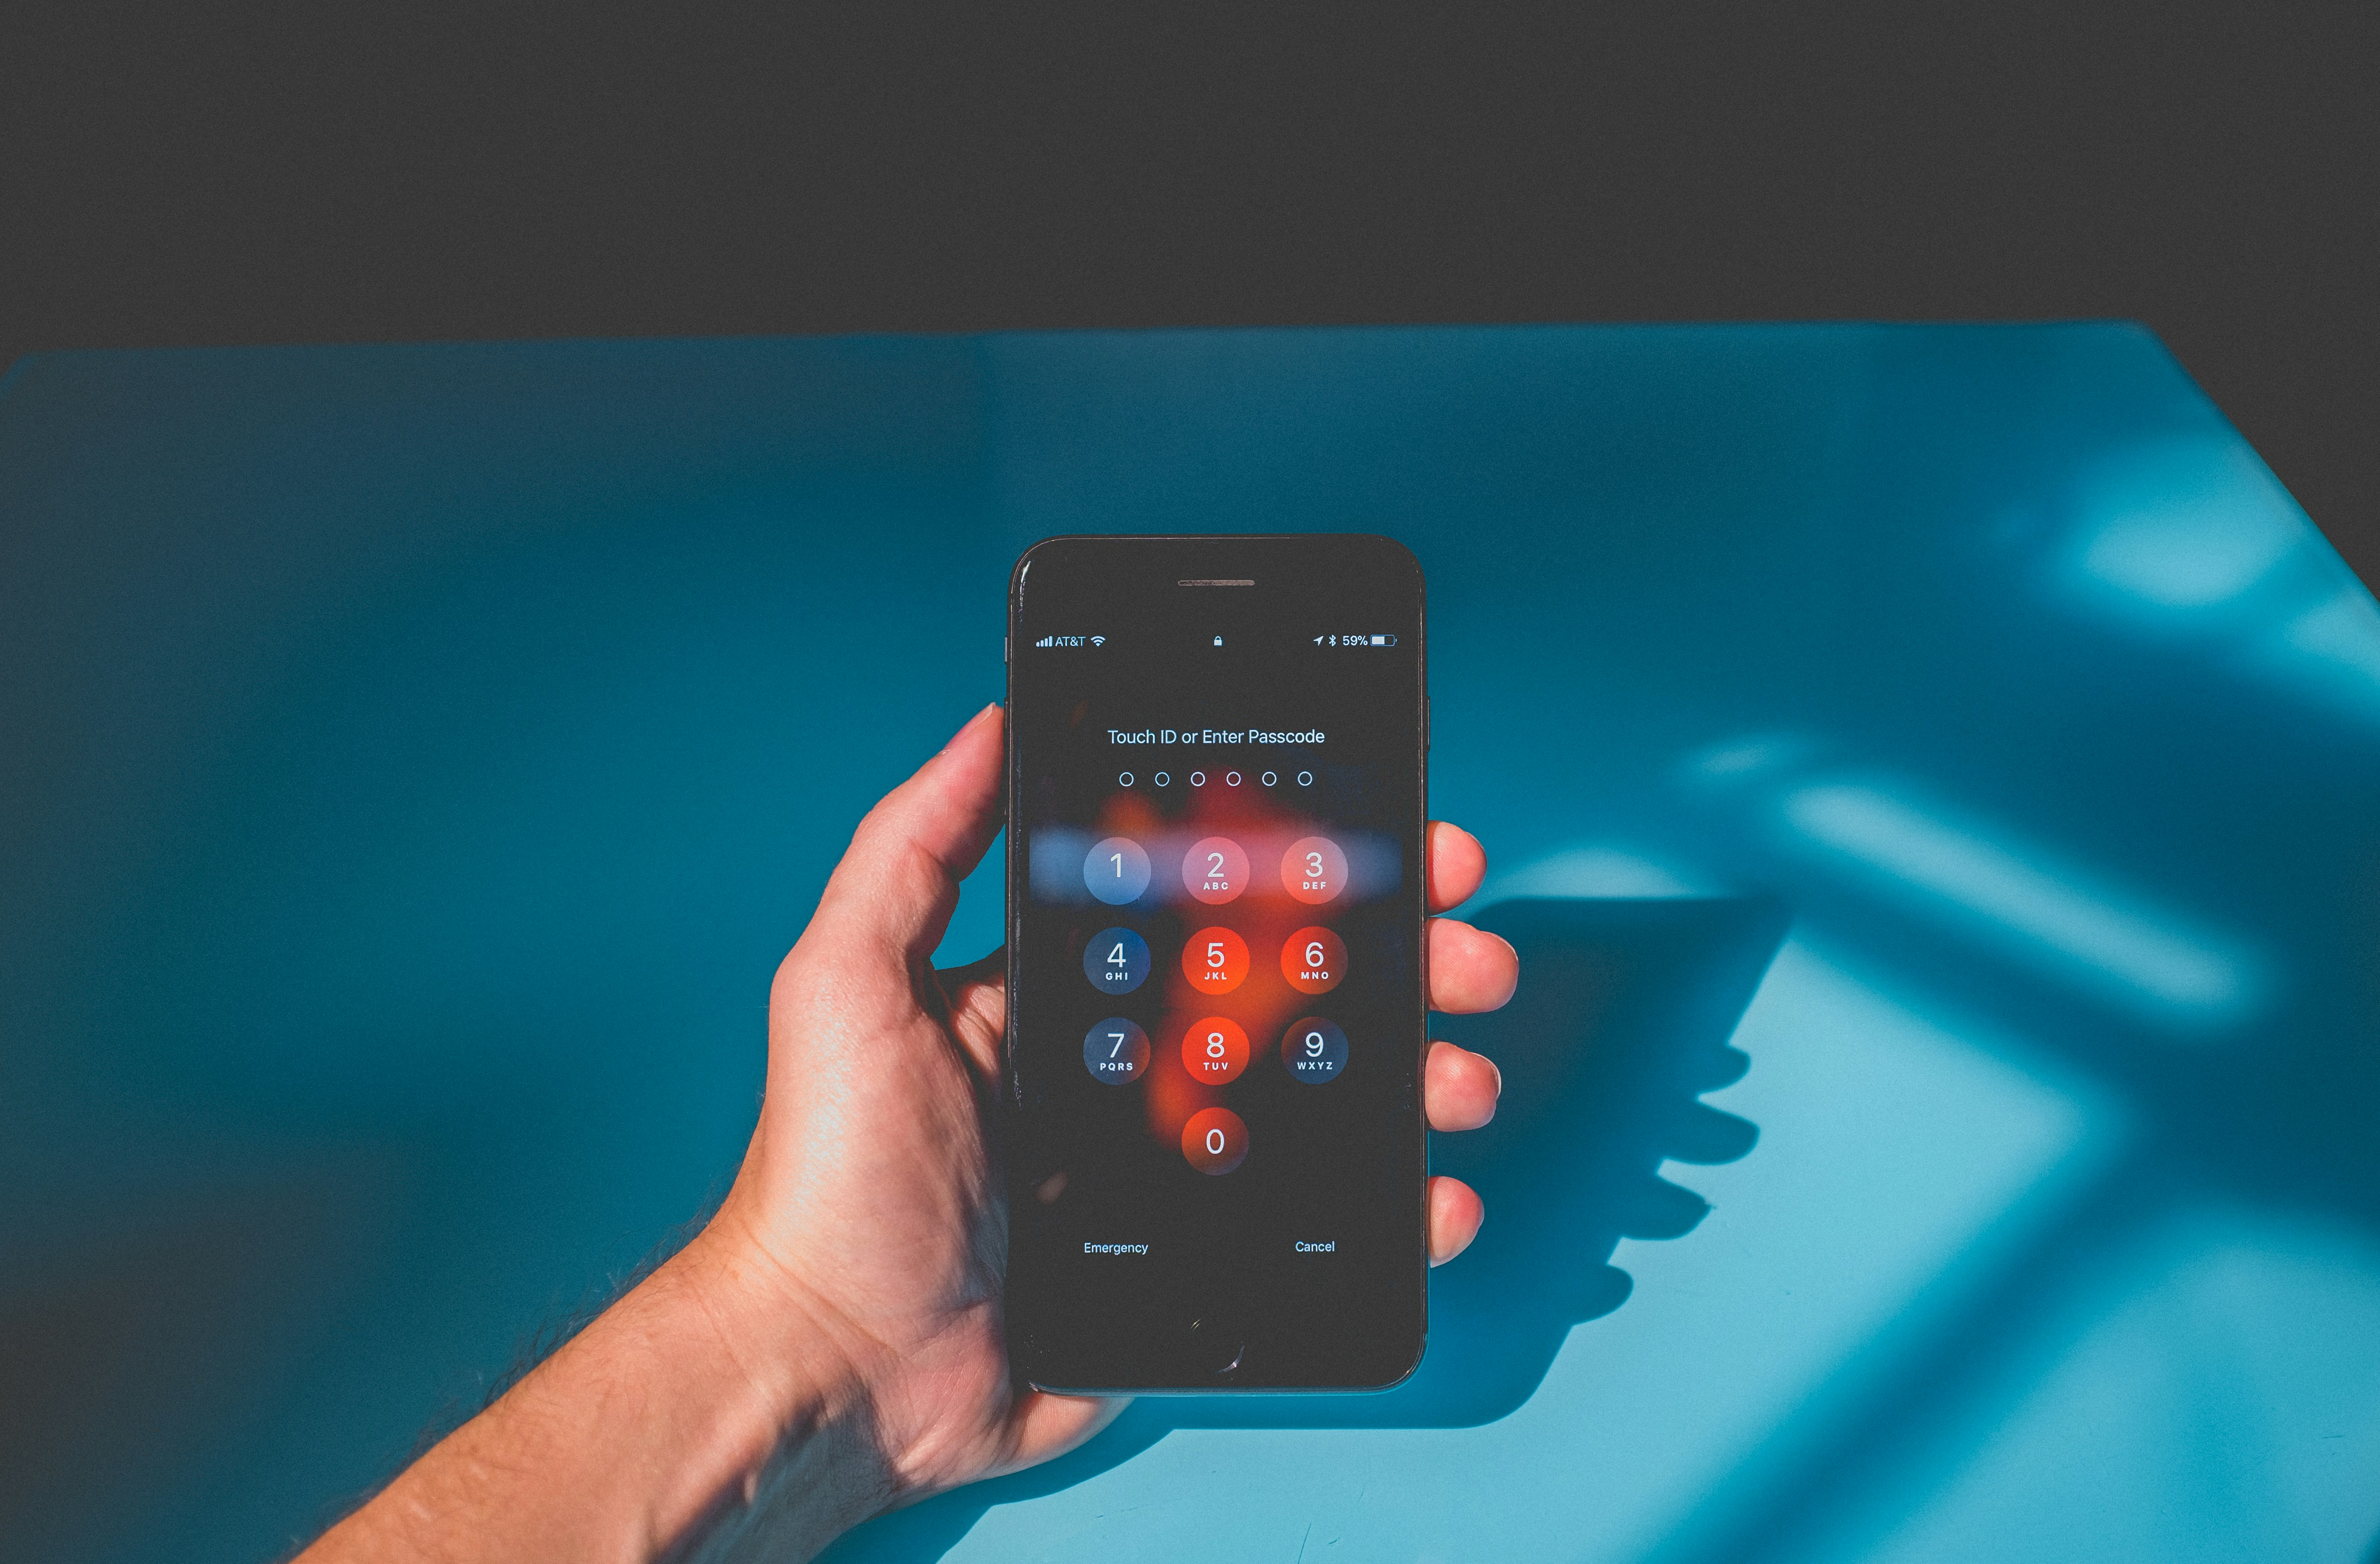 Fotografie einer Hand, die vor einem blauen Hintergrund ein Smartphone hält. Das Smartphone zeigt den Eingabebildschirm für den Freischaltcode.